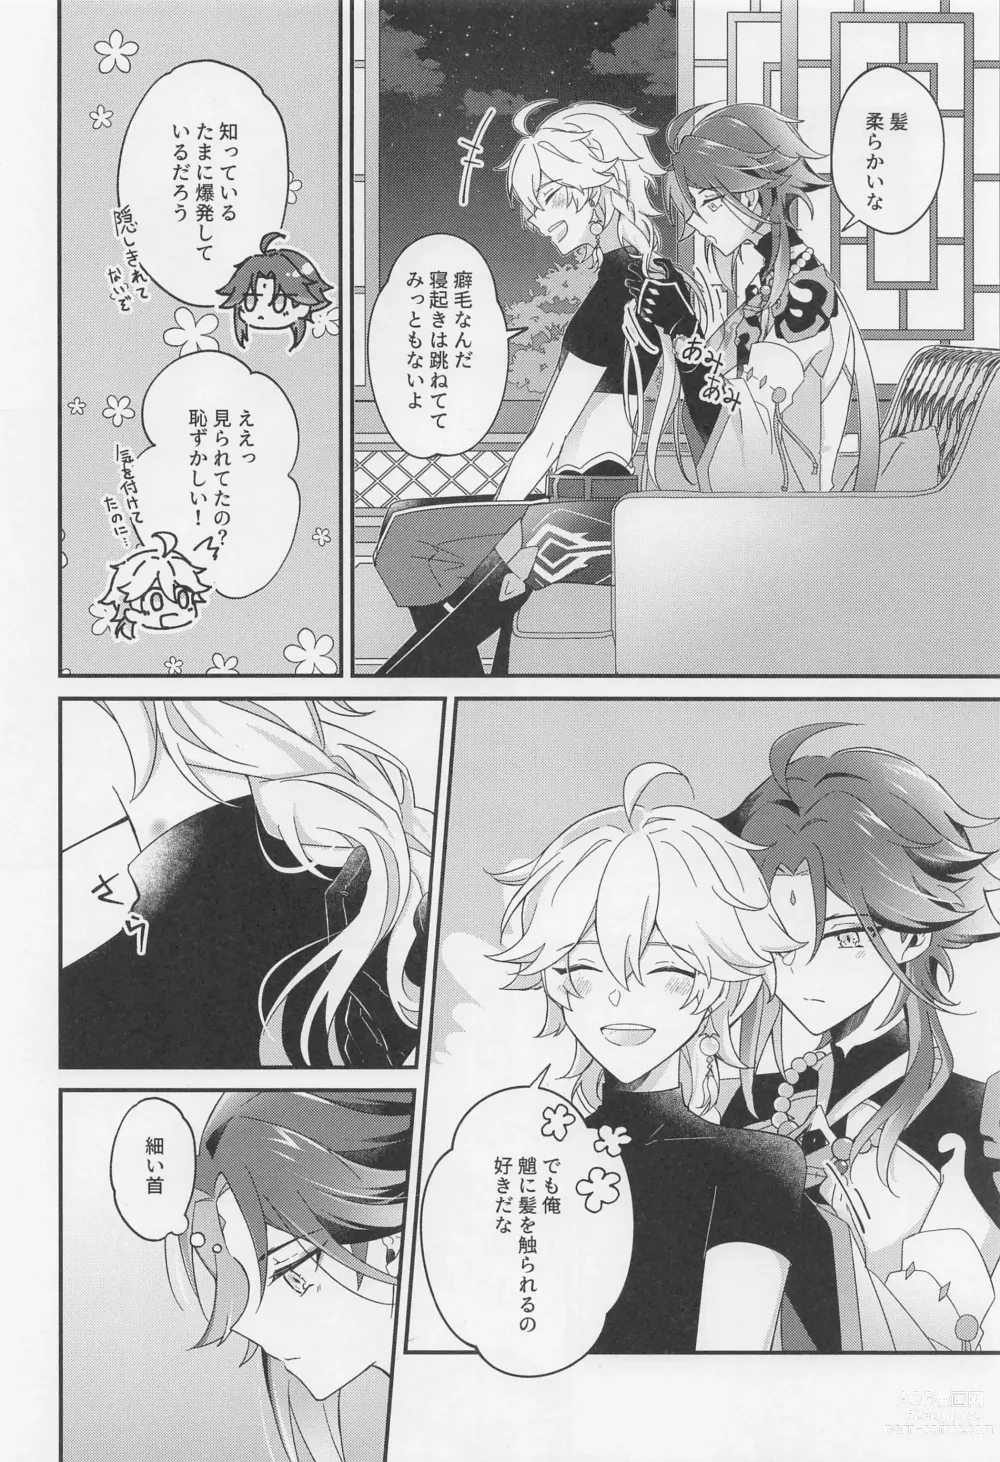 Page 55 of doujinshi Kimi o Wazurau